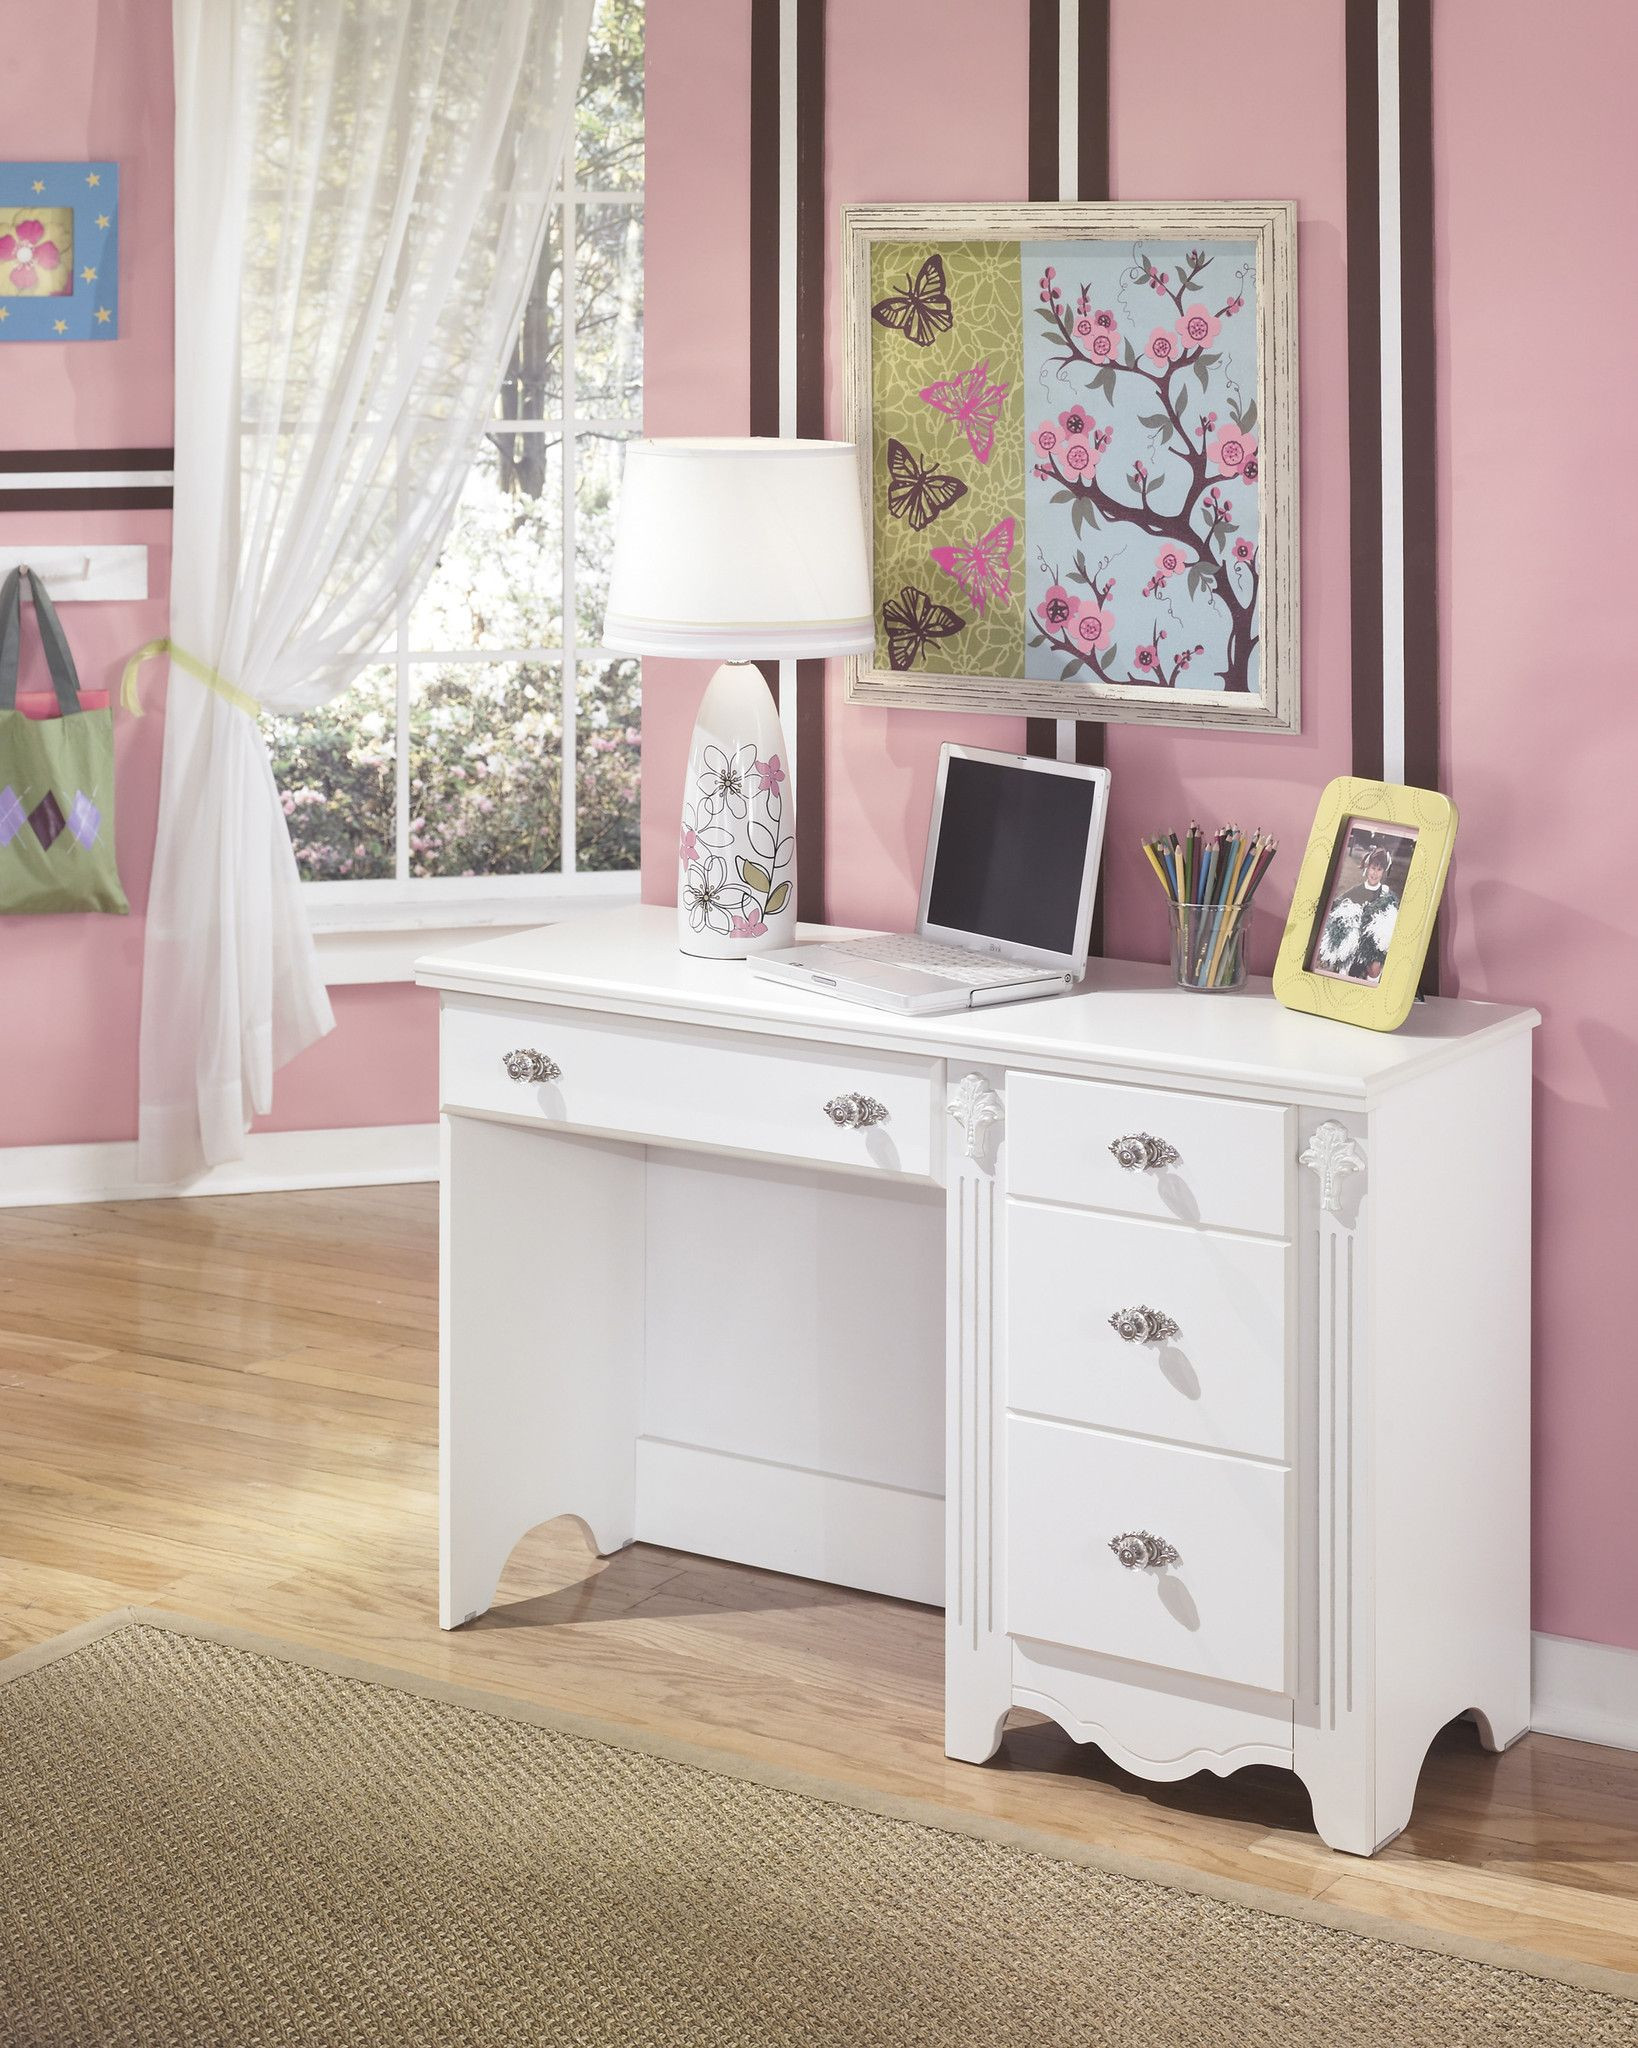 Girls Bedroom Set With Desk
 Exquisite Bedroom Desk